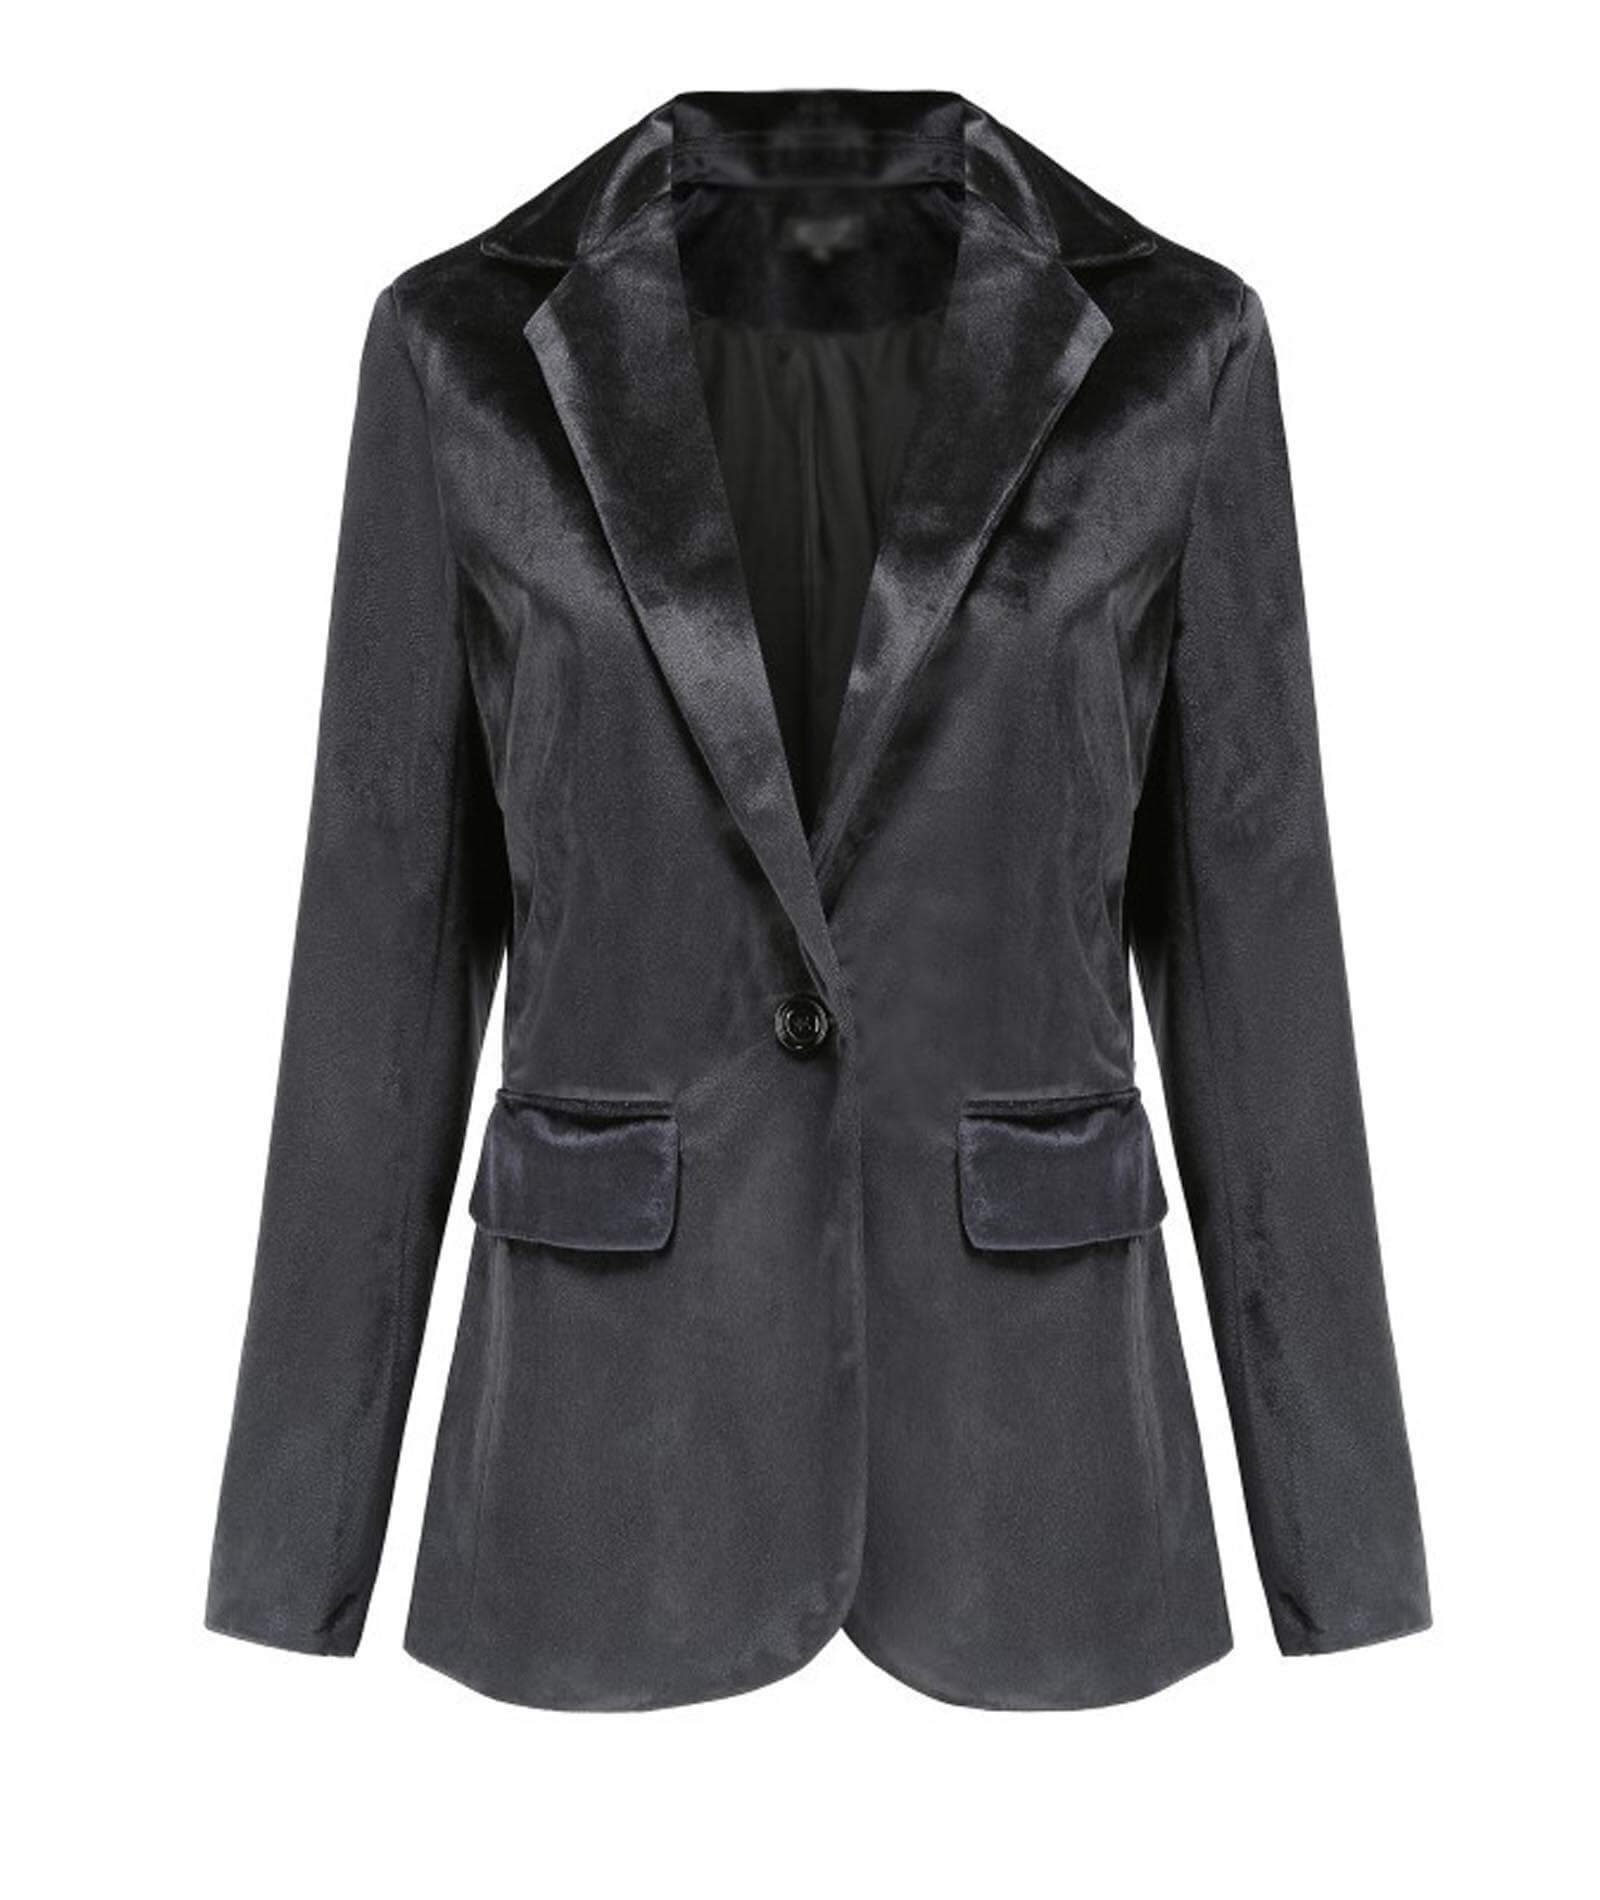  Women 1 Button Velvet Blazer Coat Slim Fit Casual Lapel Office Jacket Suit